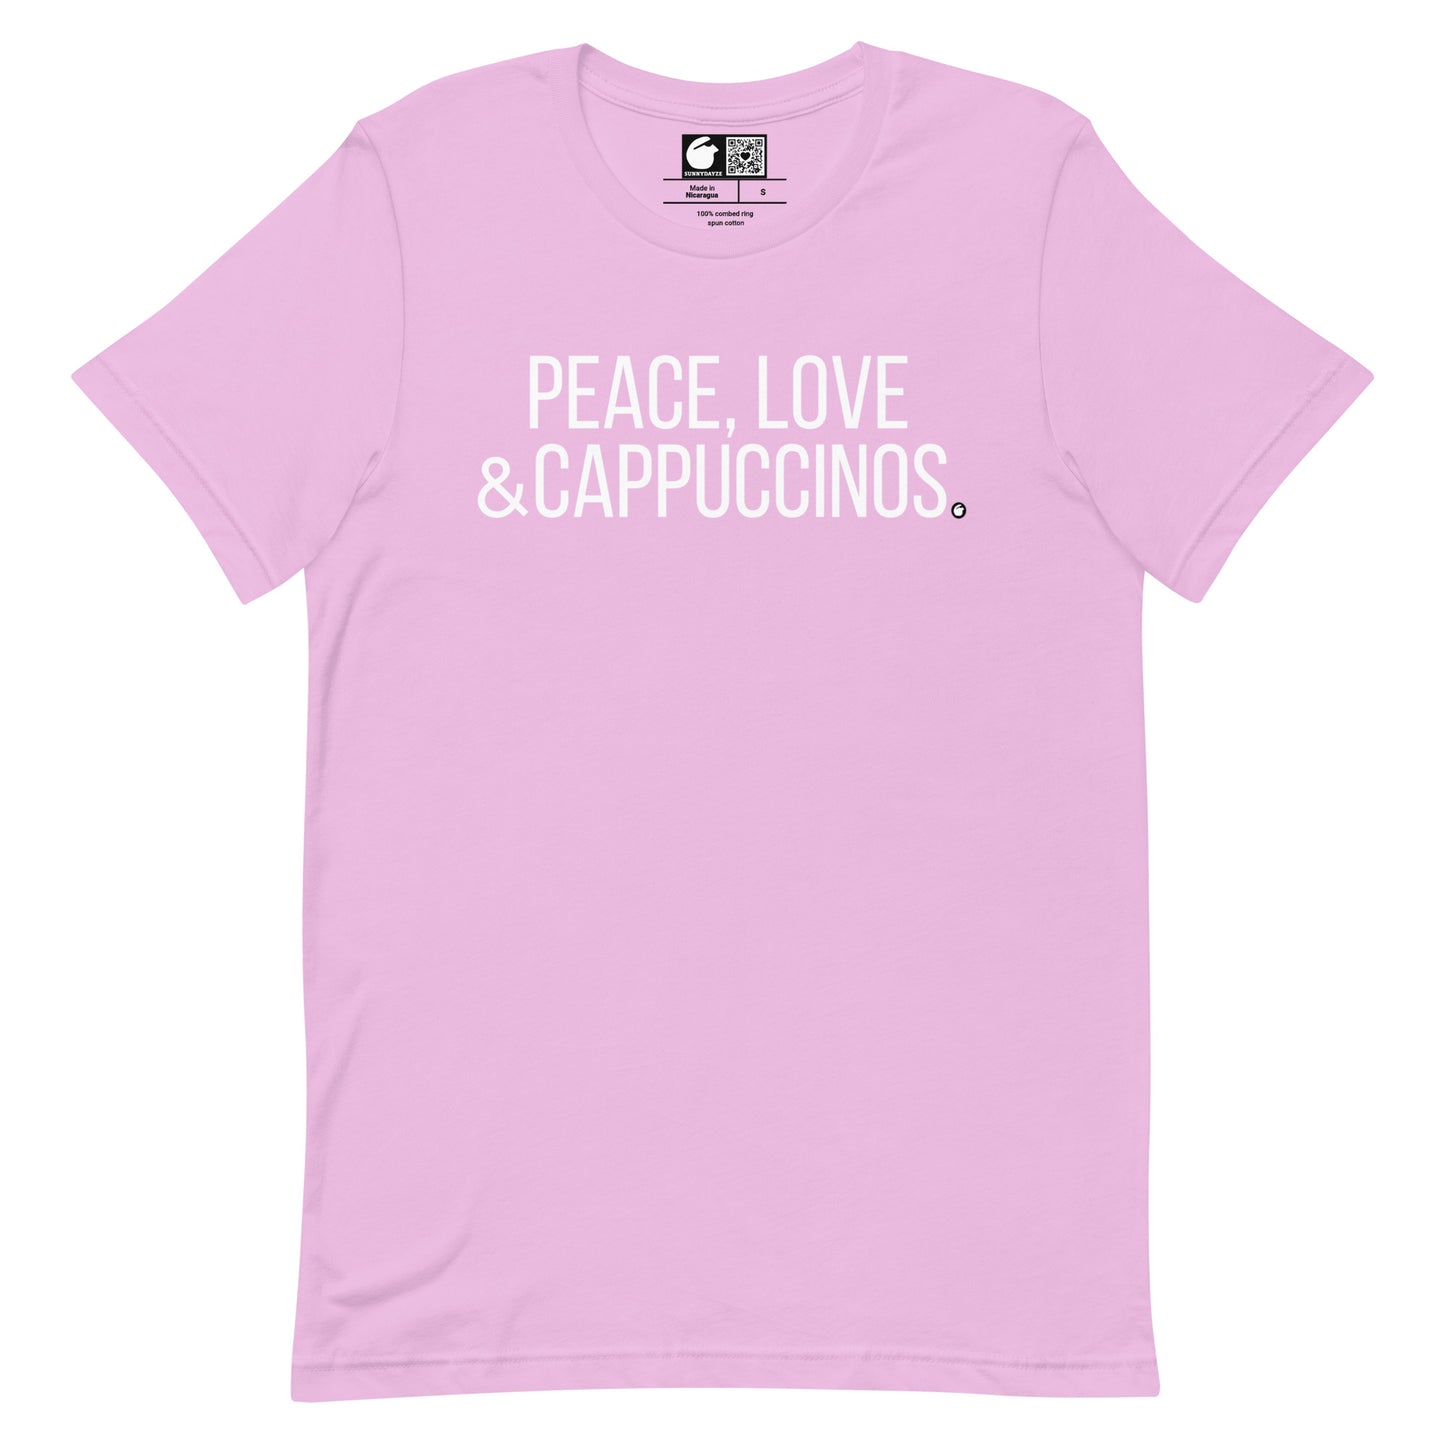 CAPPUCCINOS Short-Sleeve Unisex t-shirt